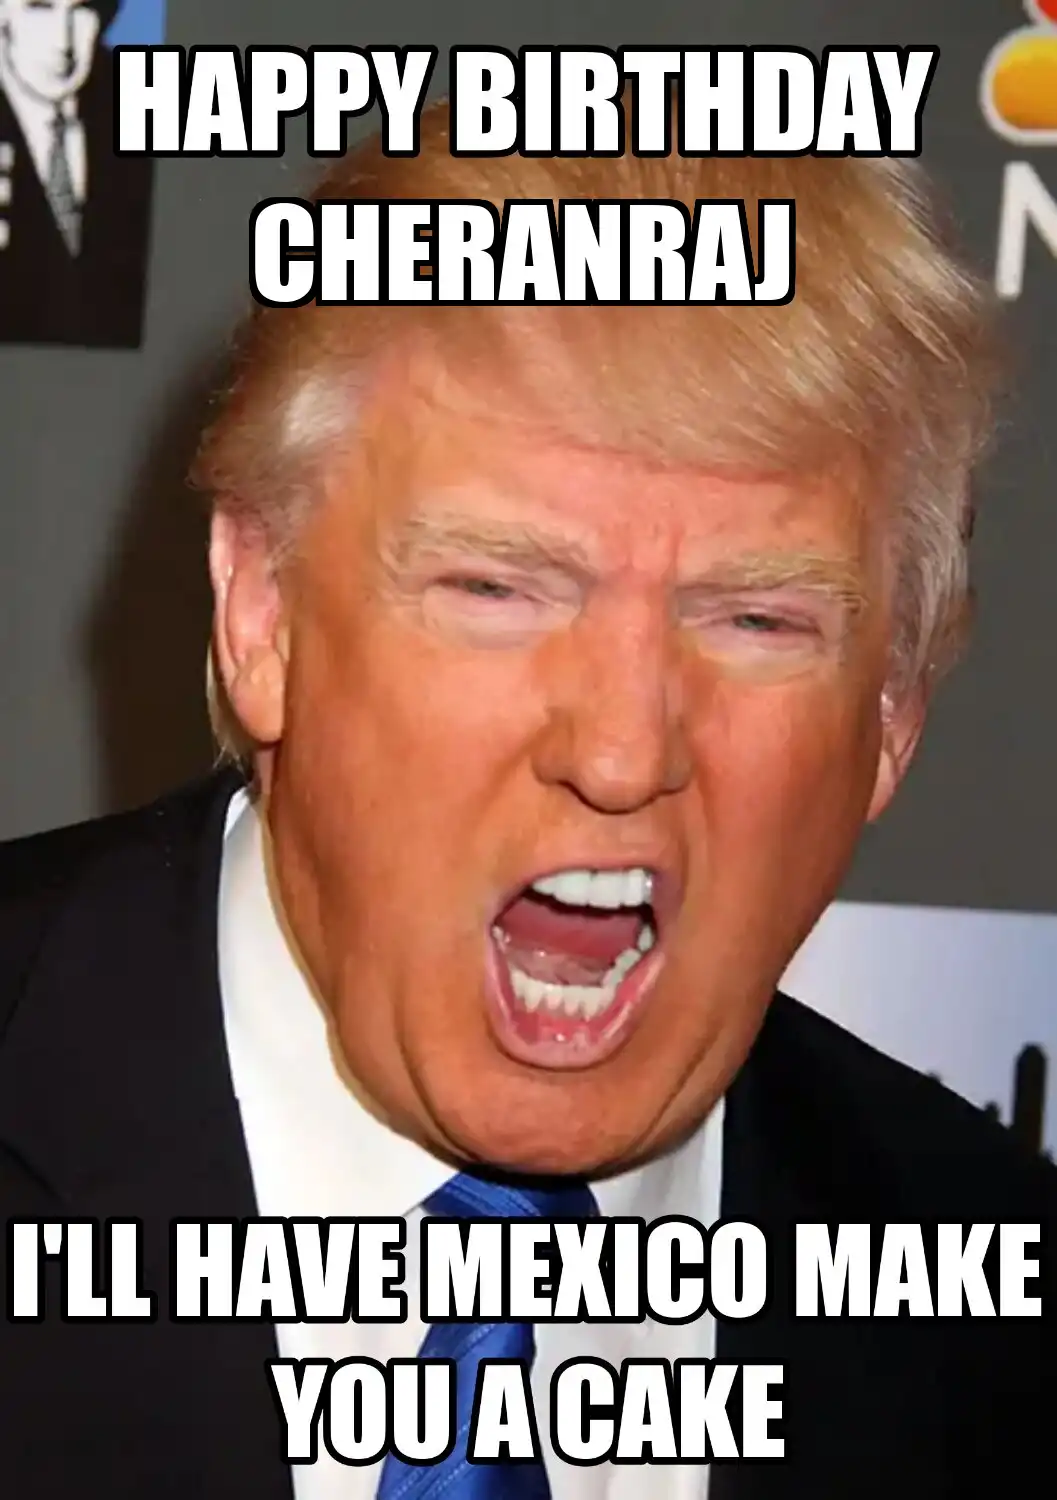 Happy Birthday Cheranraj Mexico Make You A Cake Meme